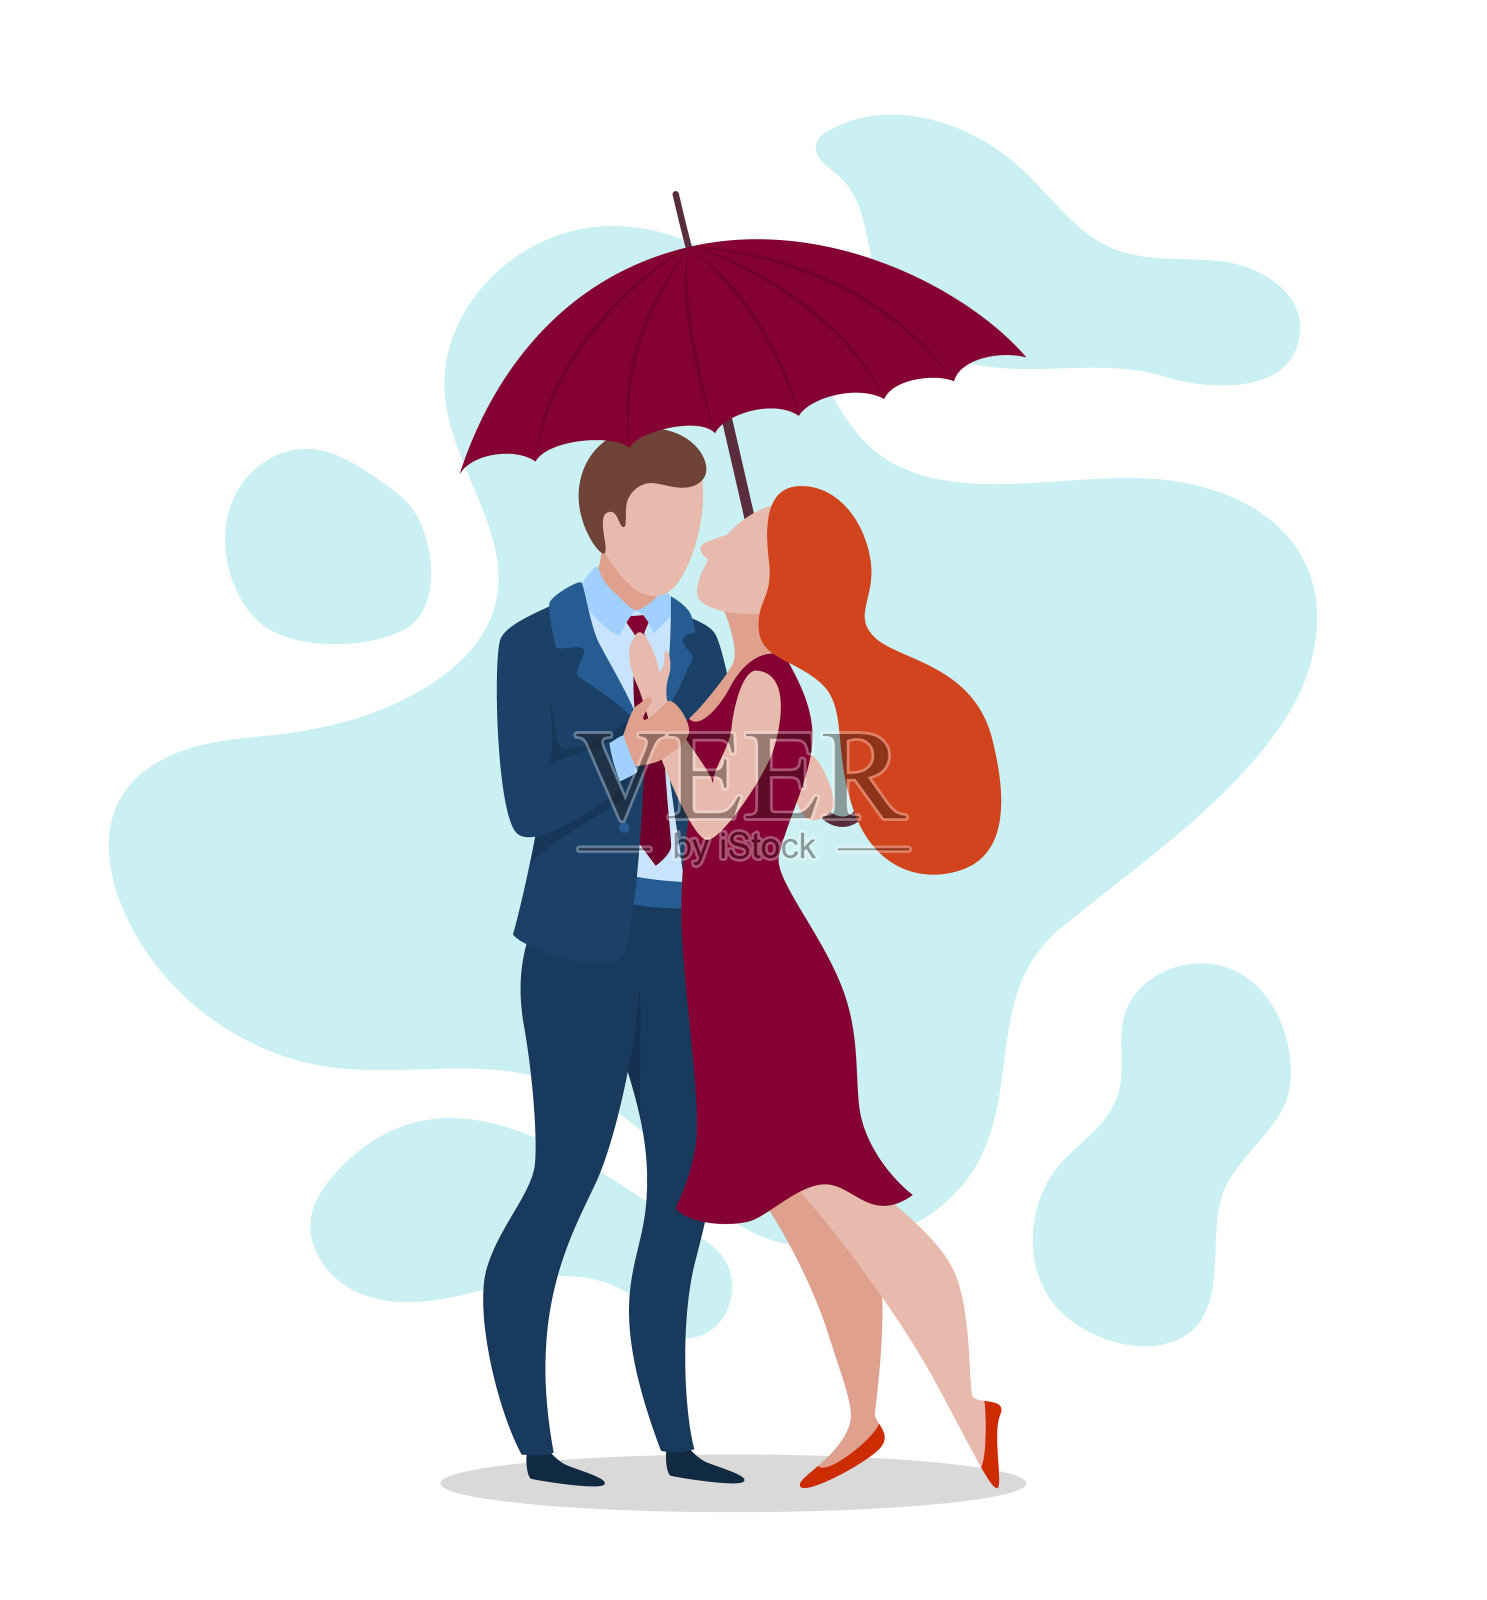 卡通色彩人物人物幸福夫妇和伞的概念。向量设计元素图片